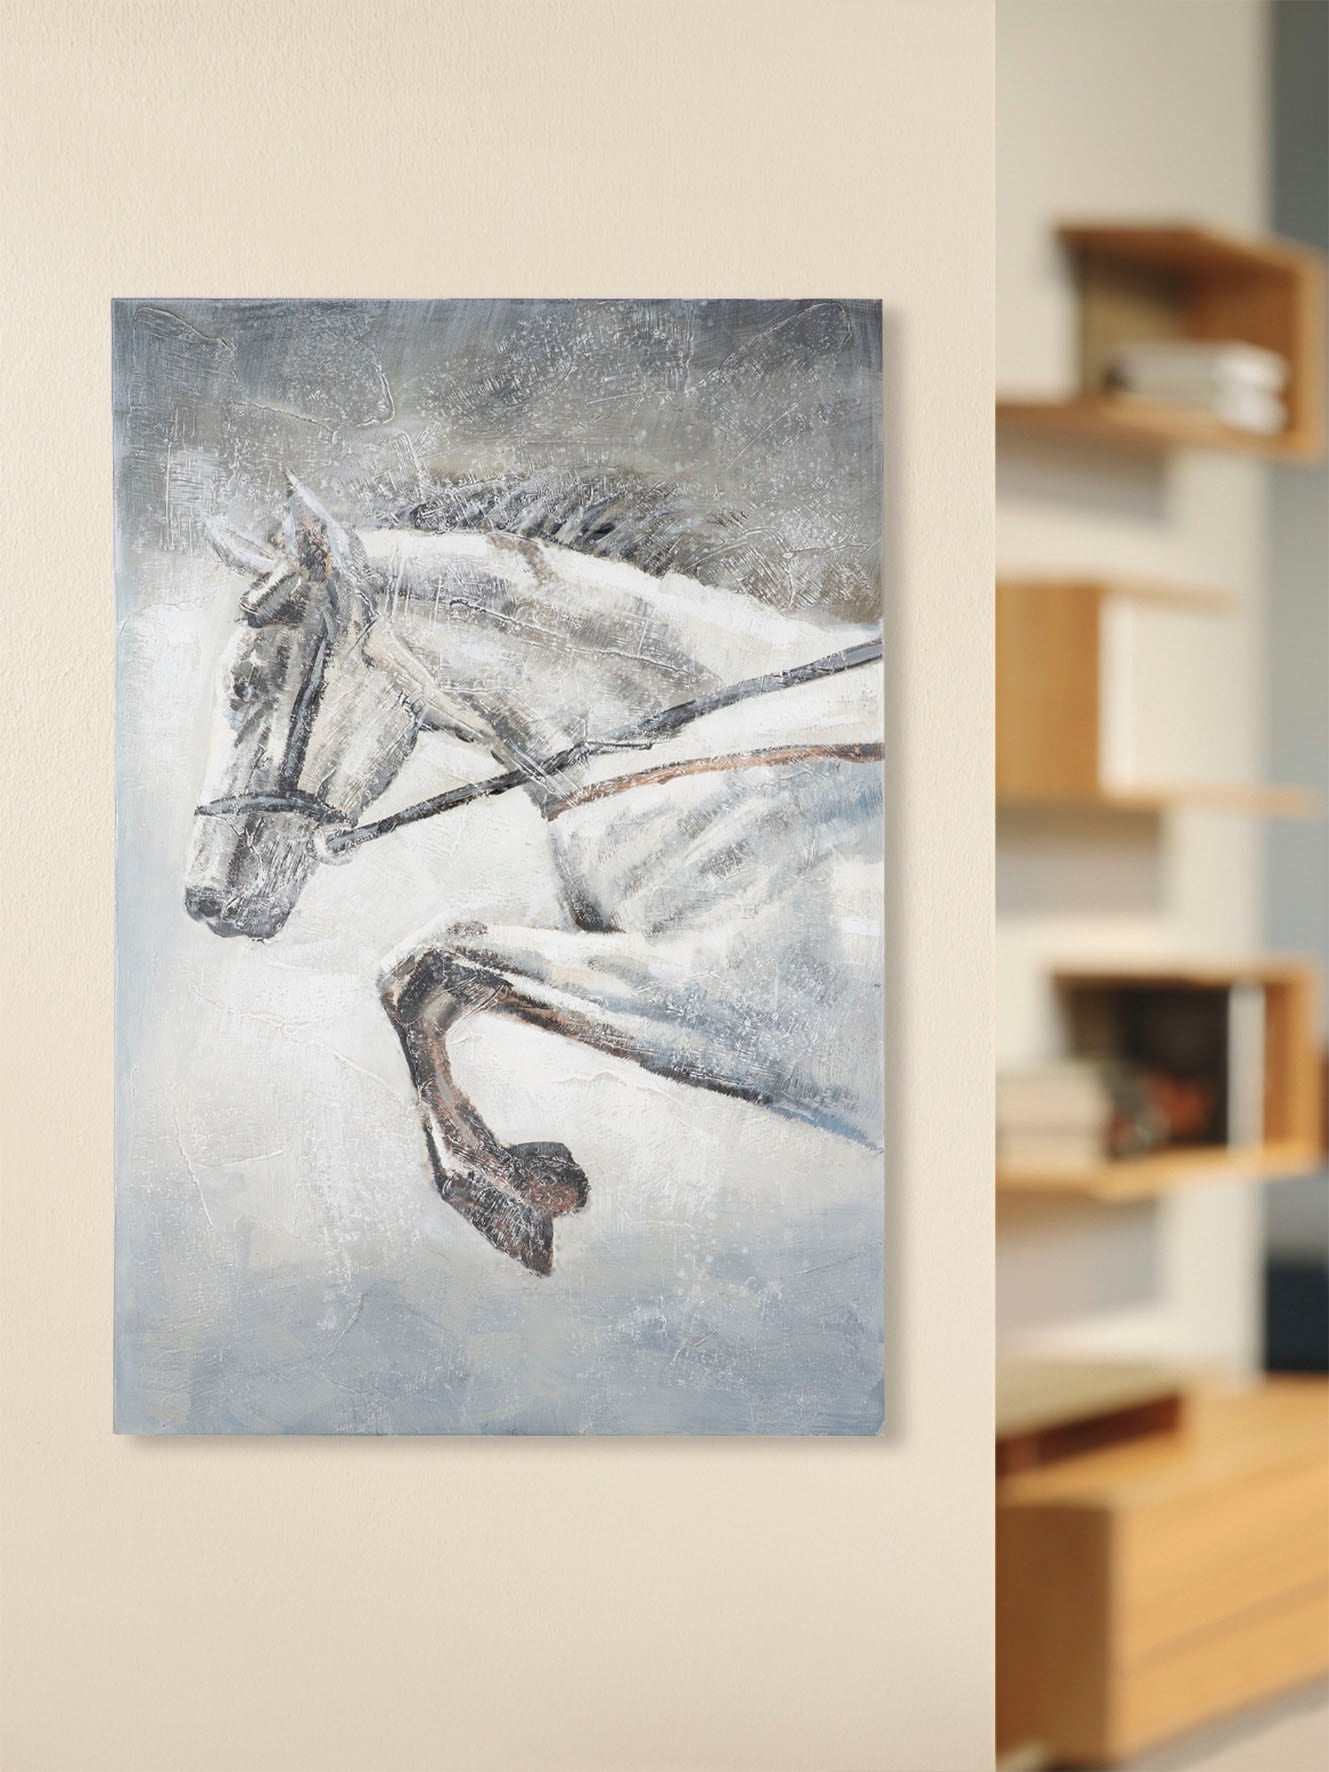 Gemälde von einem Pferd